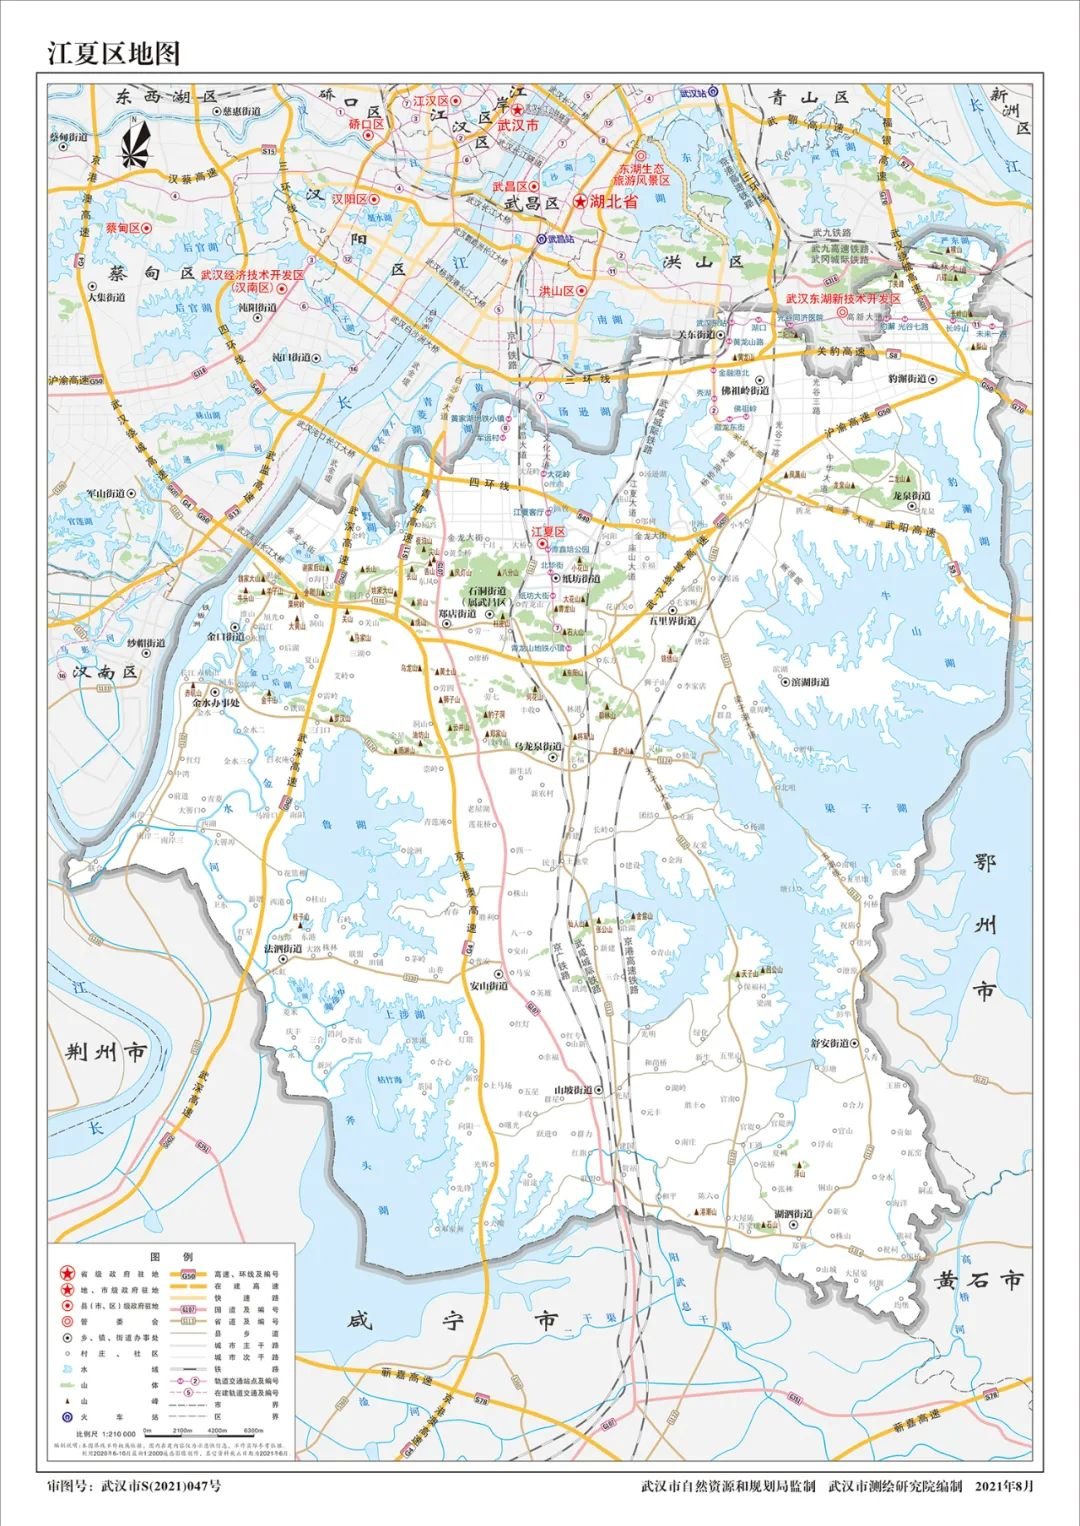 武汉2021新版地图发布,区域划分明确!